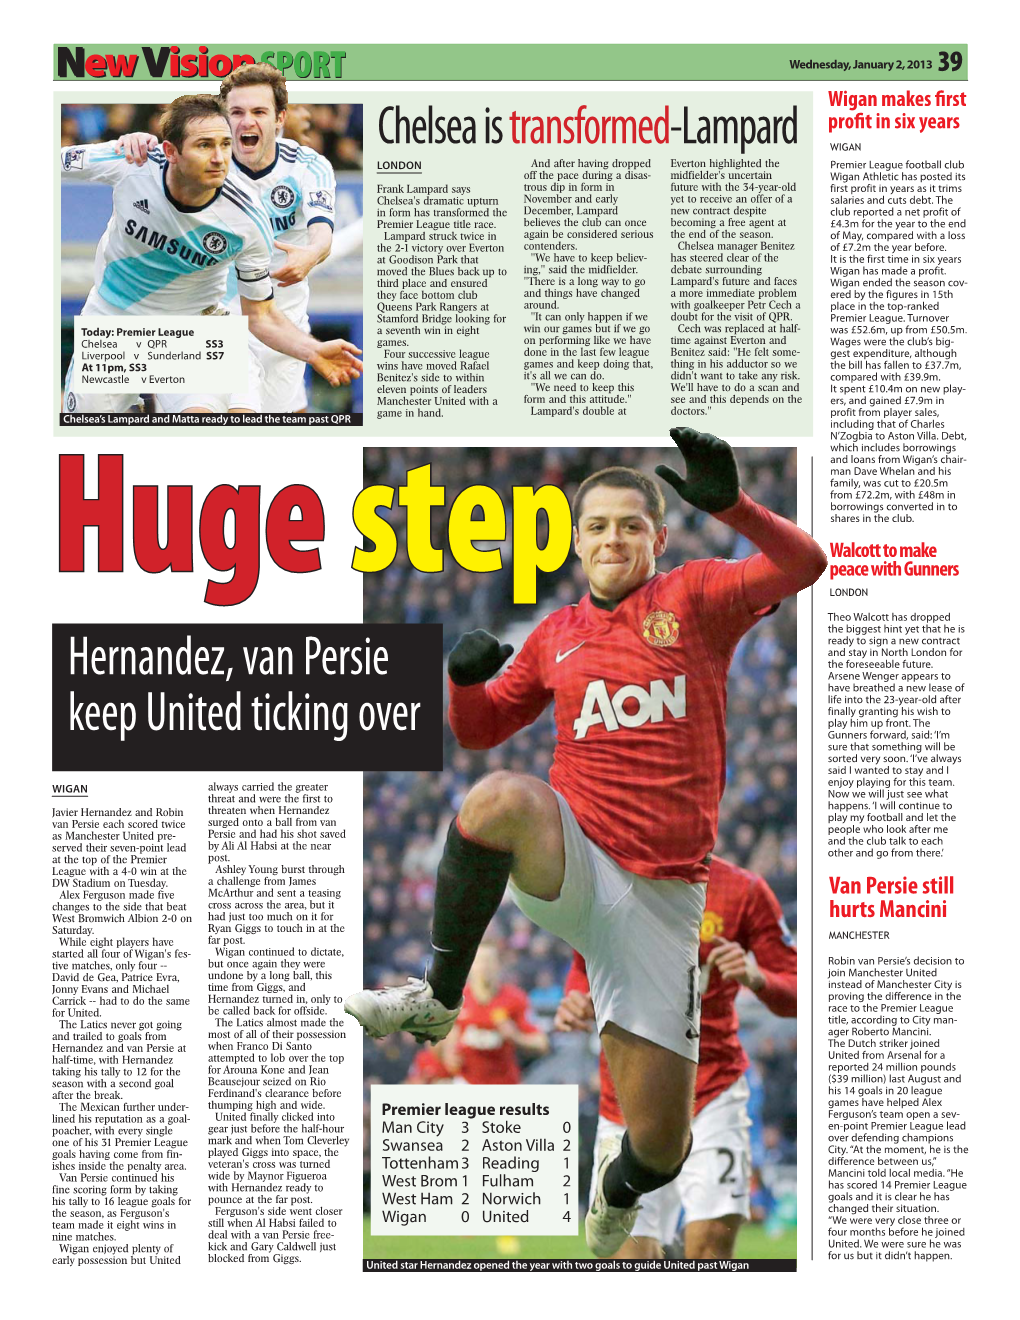 Hernandez, Van Persie Keep United Ticking Over